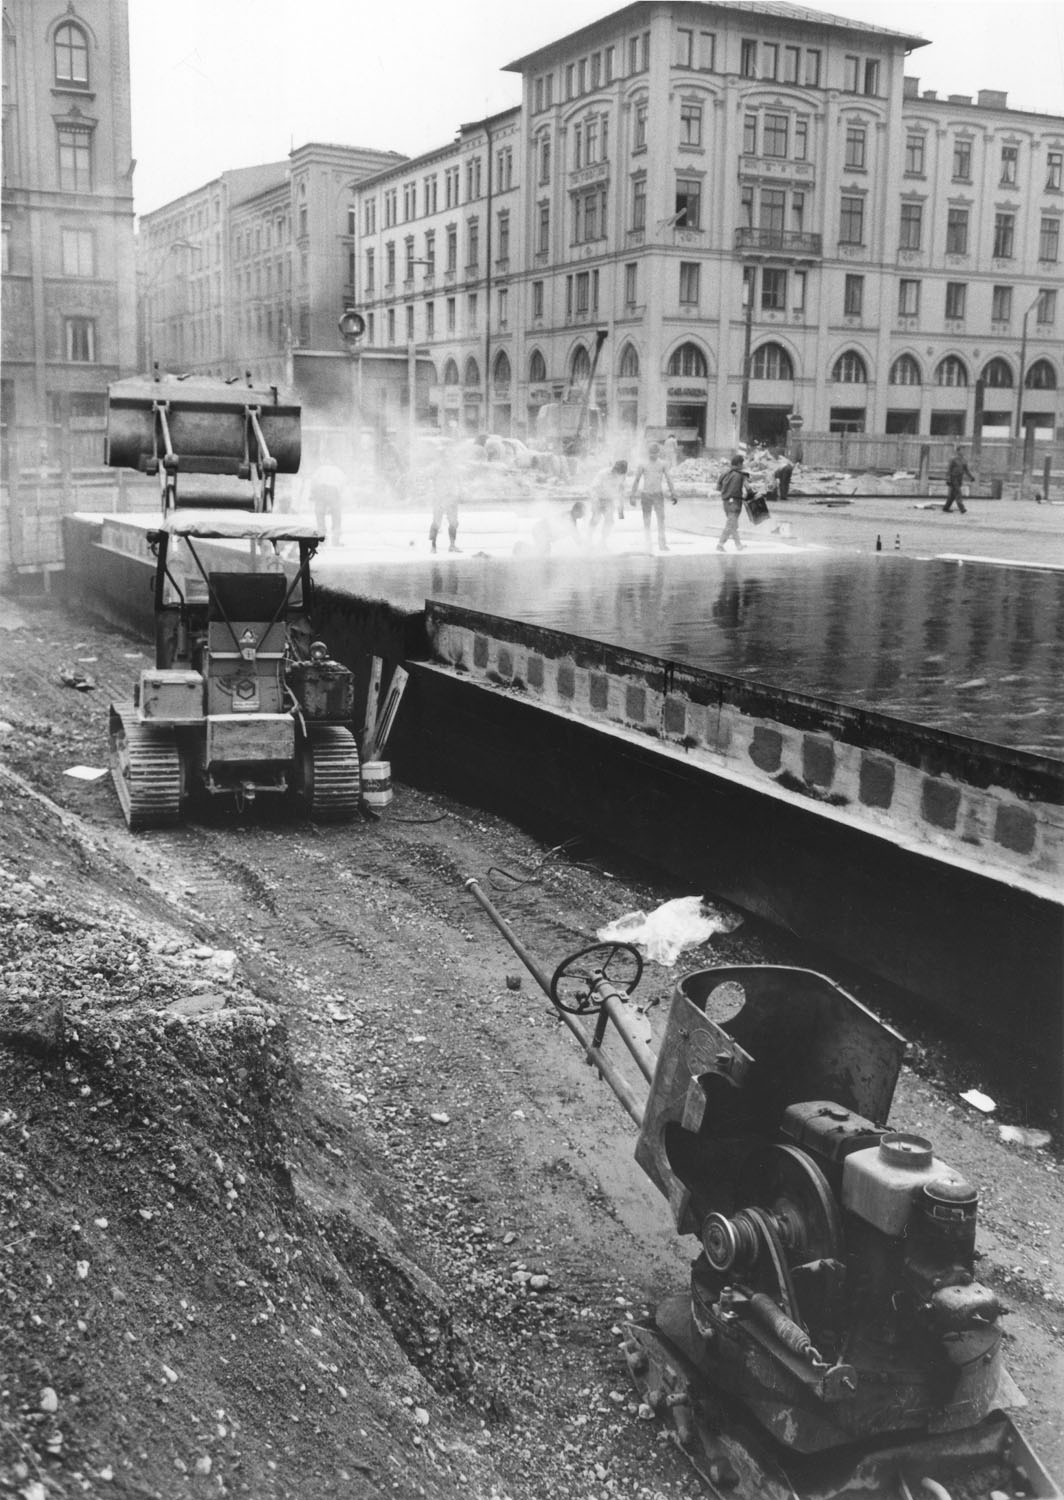 Schwarz-Weiß-Fotografie einer Baugrube mit einer Baumaschine. Im Hintergrund wird Wasser versprüht.